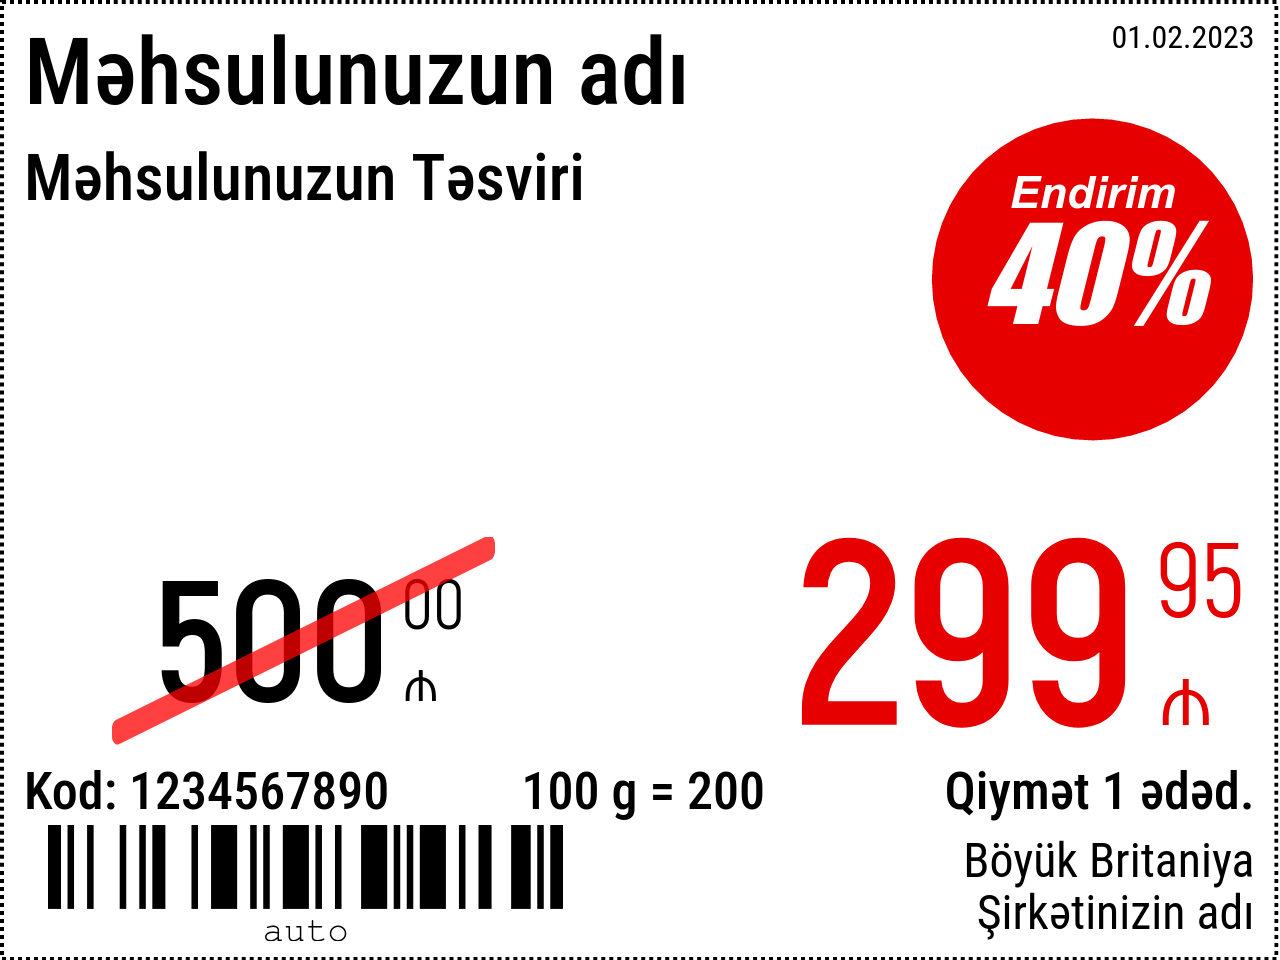 Qiymət etiketi Yeni / 8x6 / Reklam 4